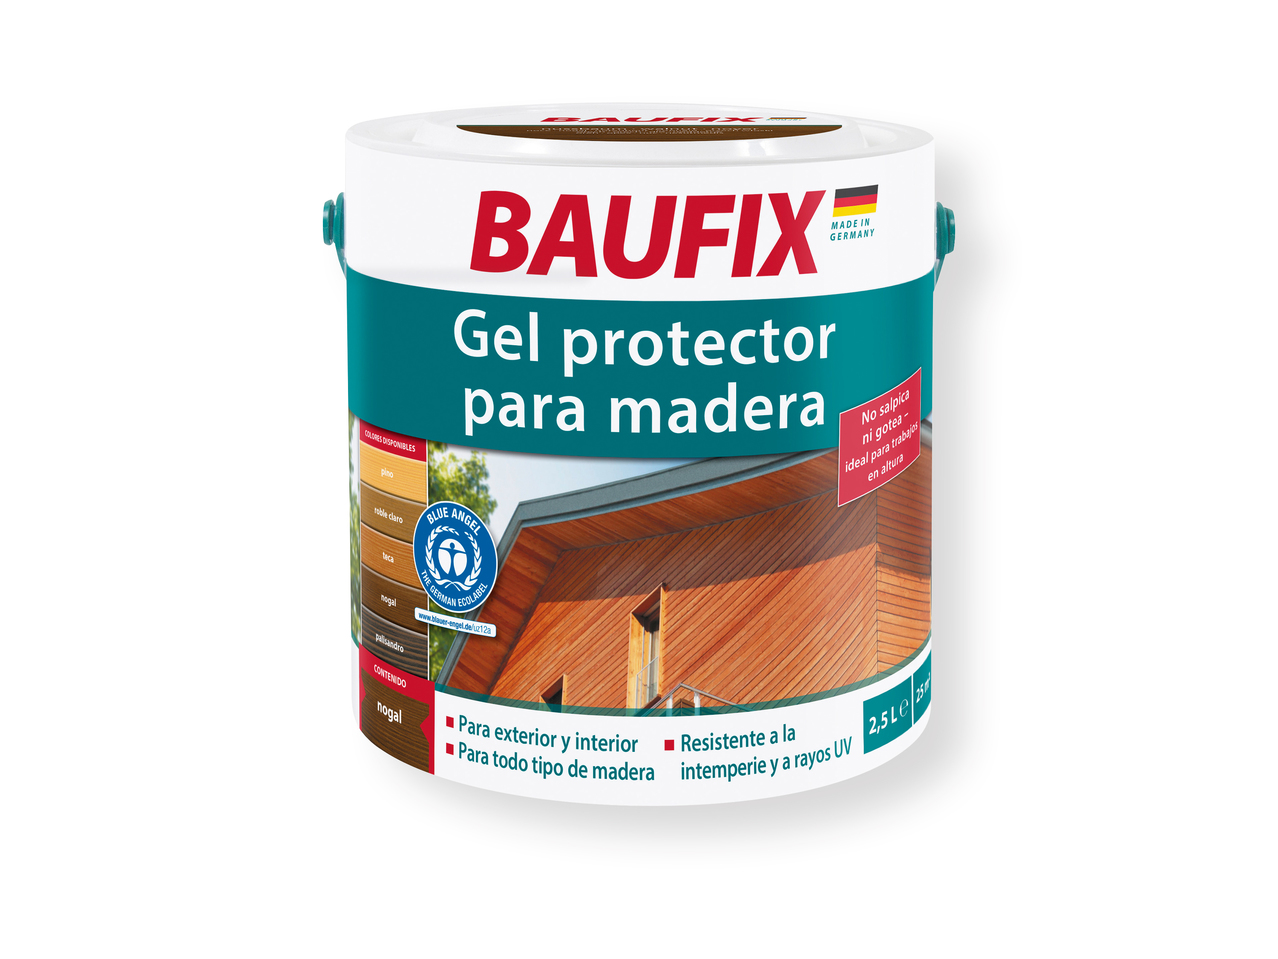 ‘Baufix(R)' Gel protector para madera